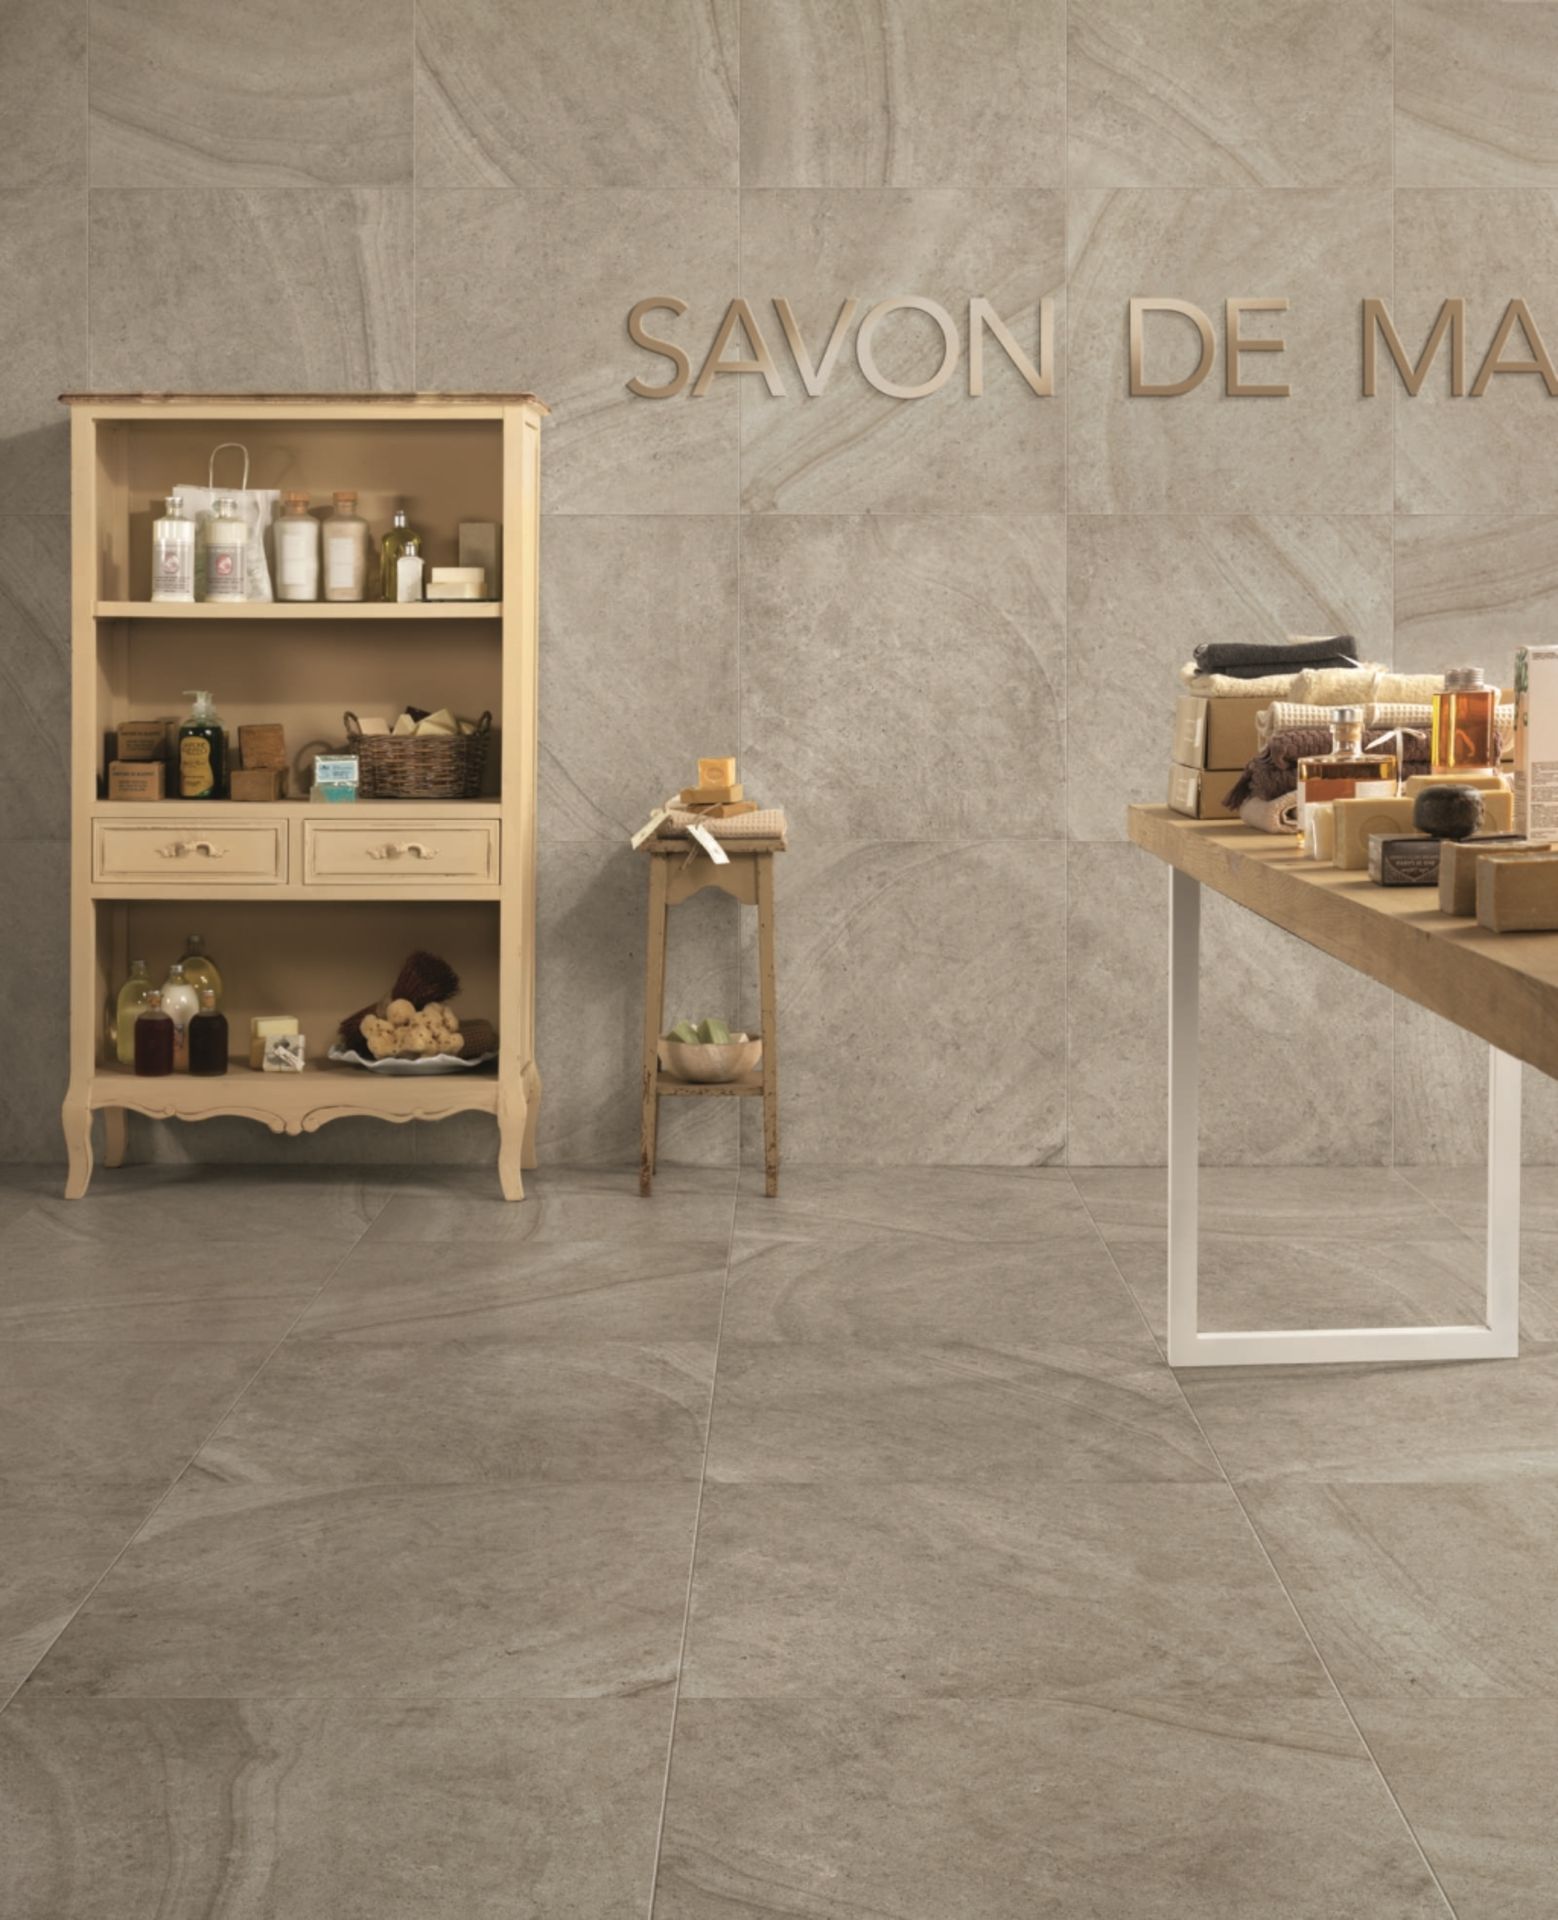 Maison Perle 8.5MM 60X30CM High Quality Italian Porcelain tiles 4 pallets - Image 2 of 3